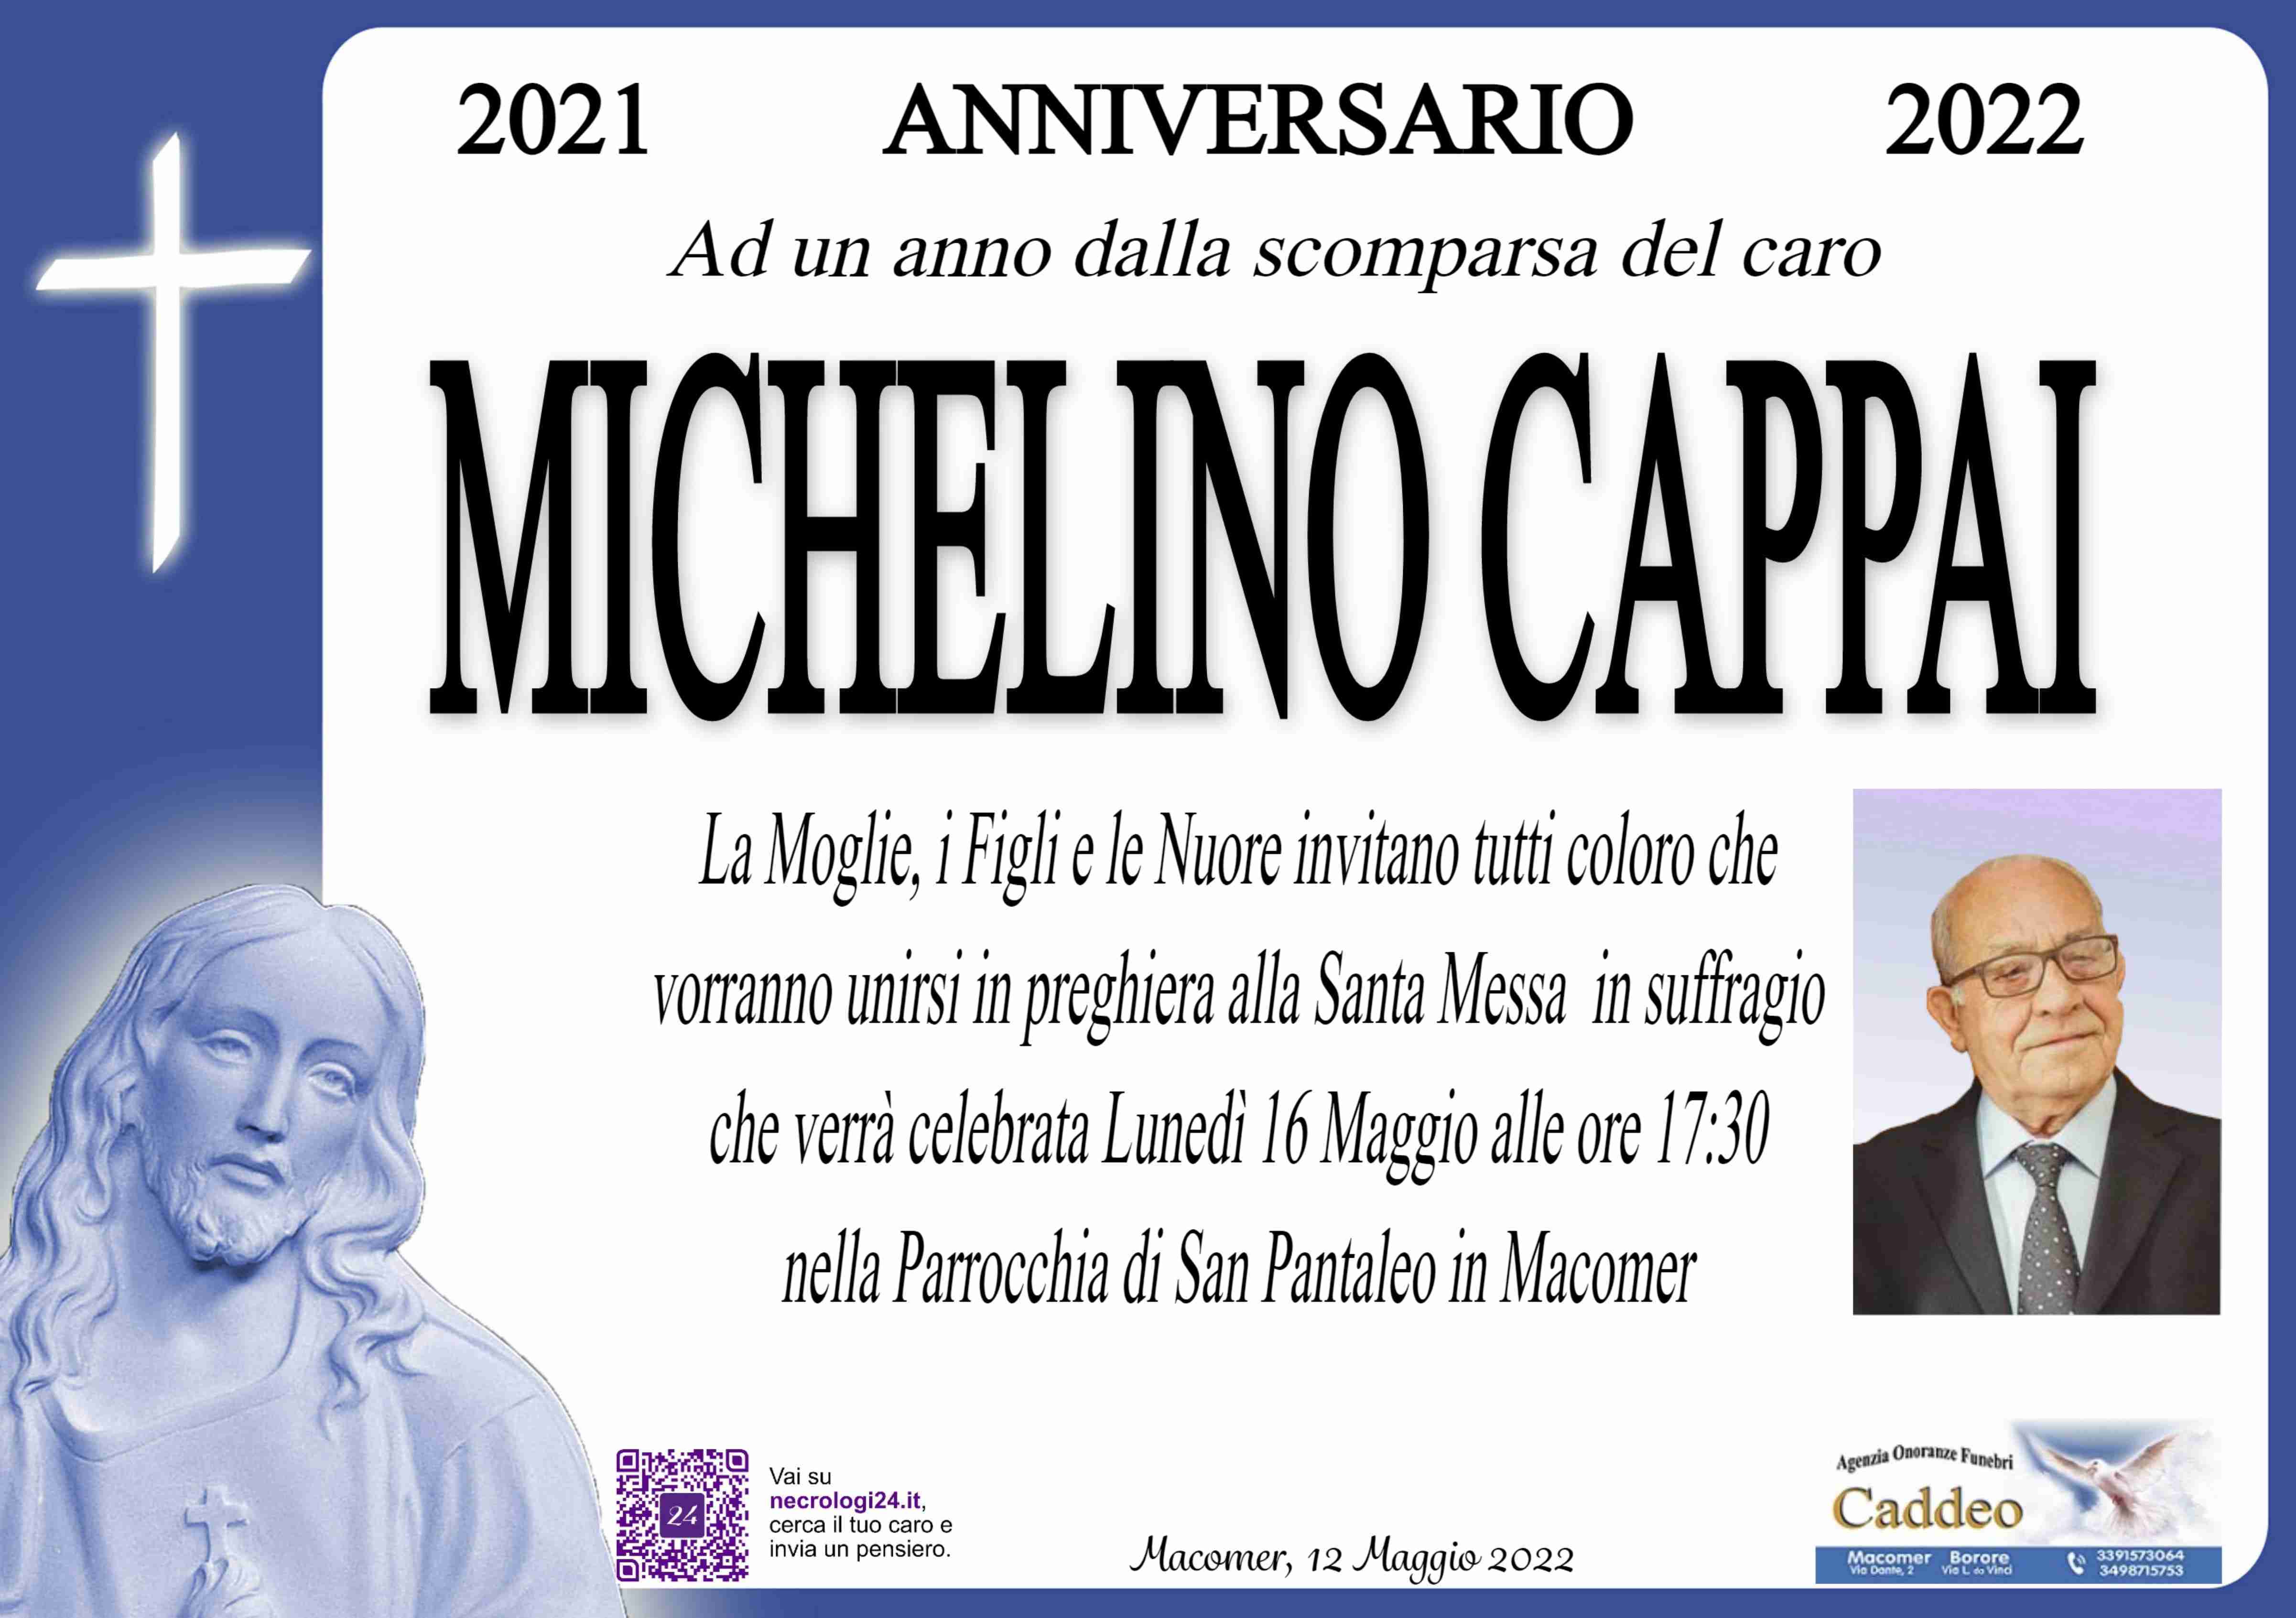 Michele Cappai